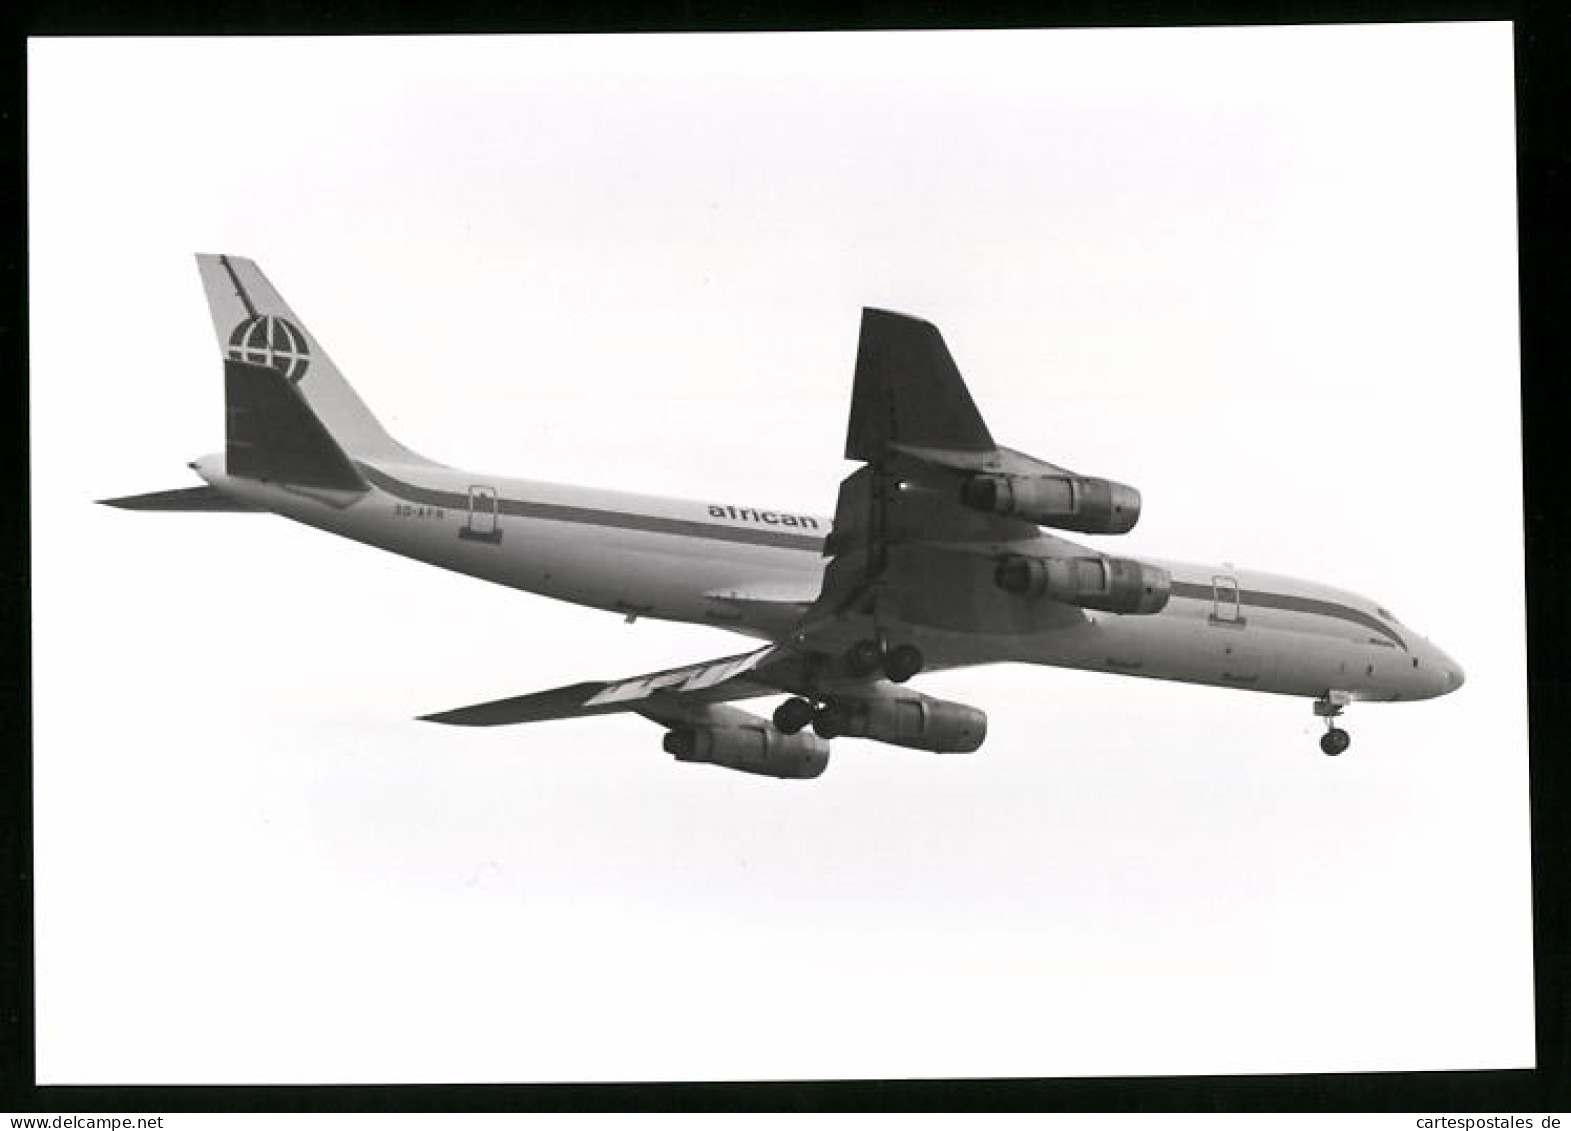 Fotografie Flugzeug Douglas DC-8, Passagierflugzeug Der African International, Kennung 3D-AFR  - Luftfahrt